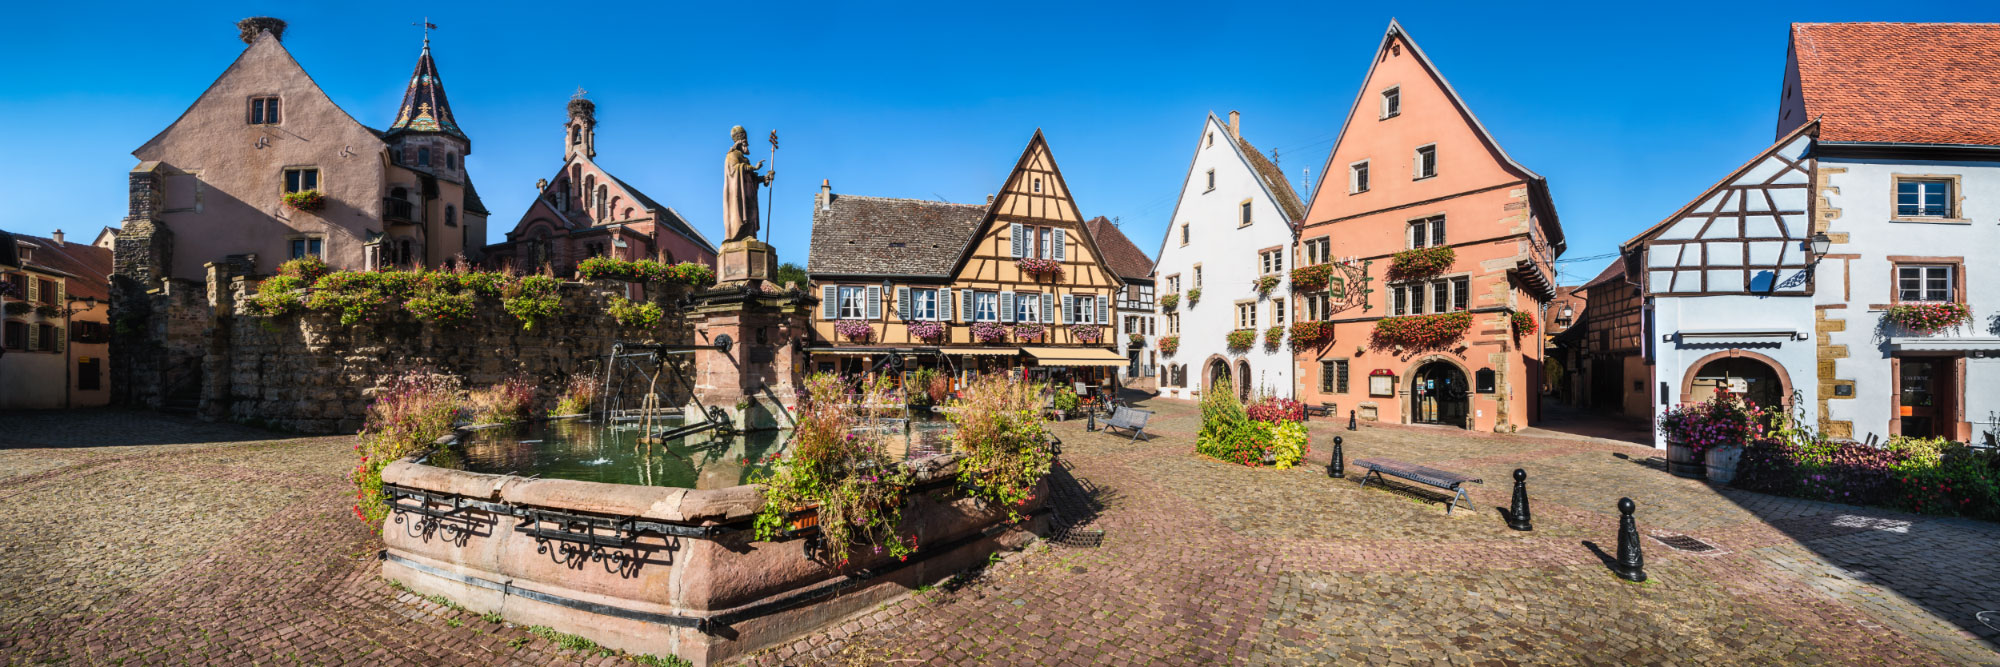 Maisons à colombages, chapelle et fontaine de la place du château, Eguisheim